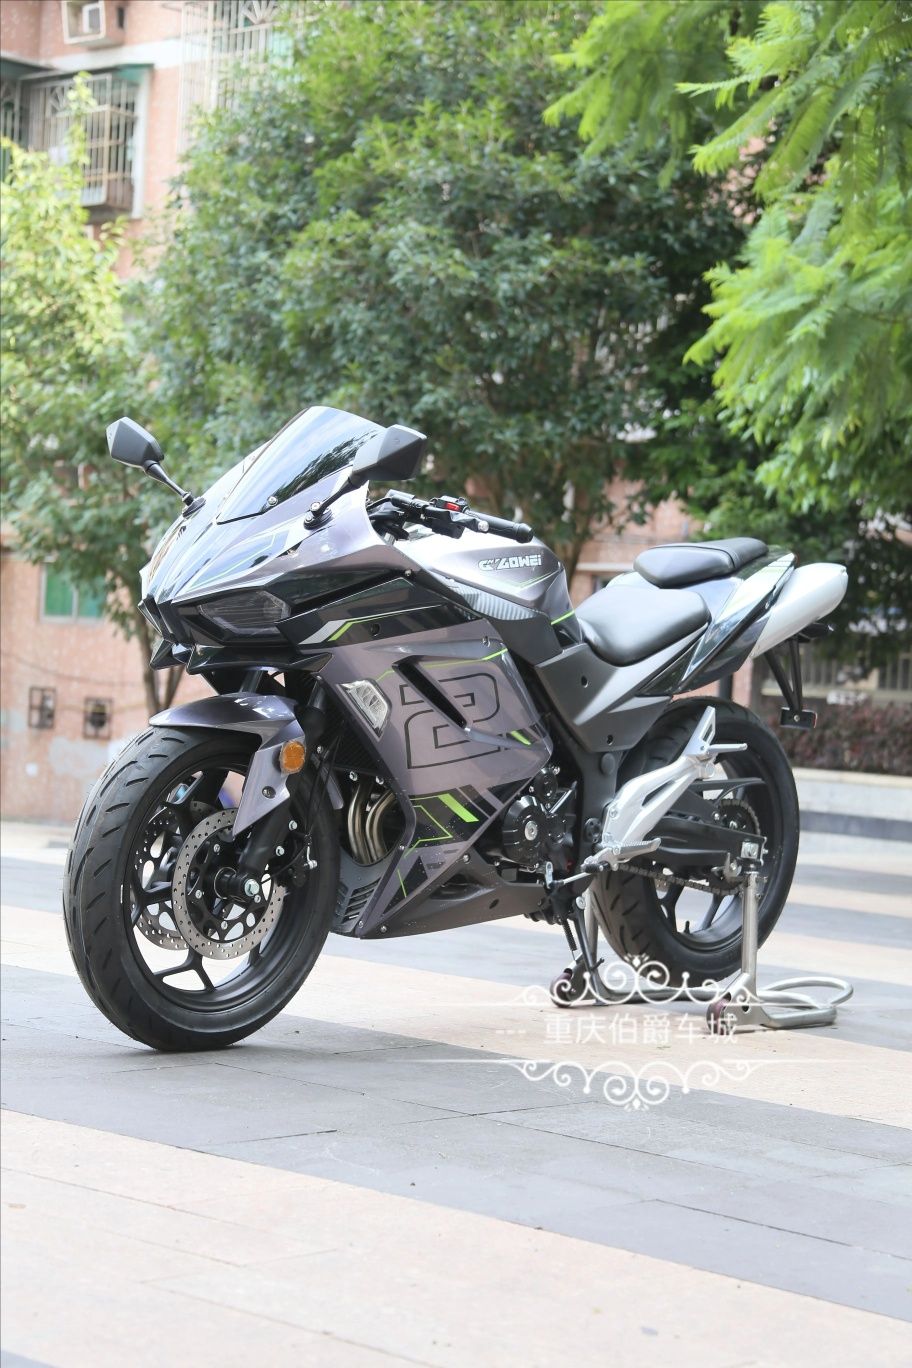 Мотоцикл H2 400 заказ